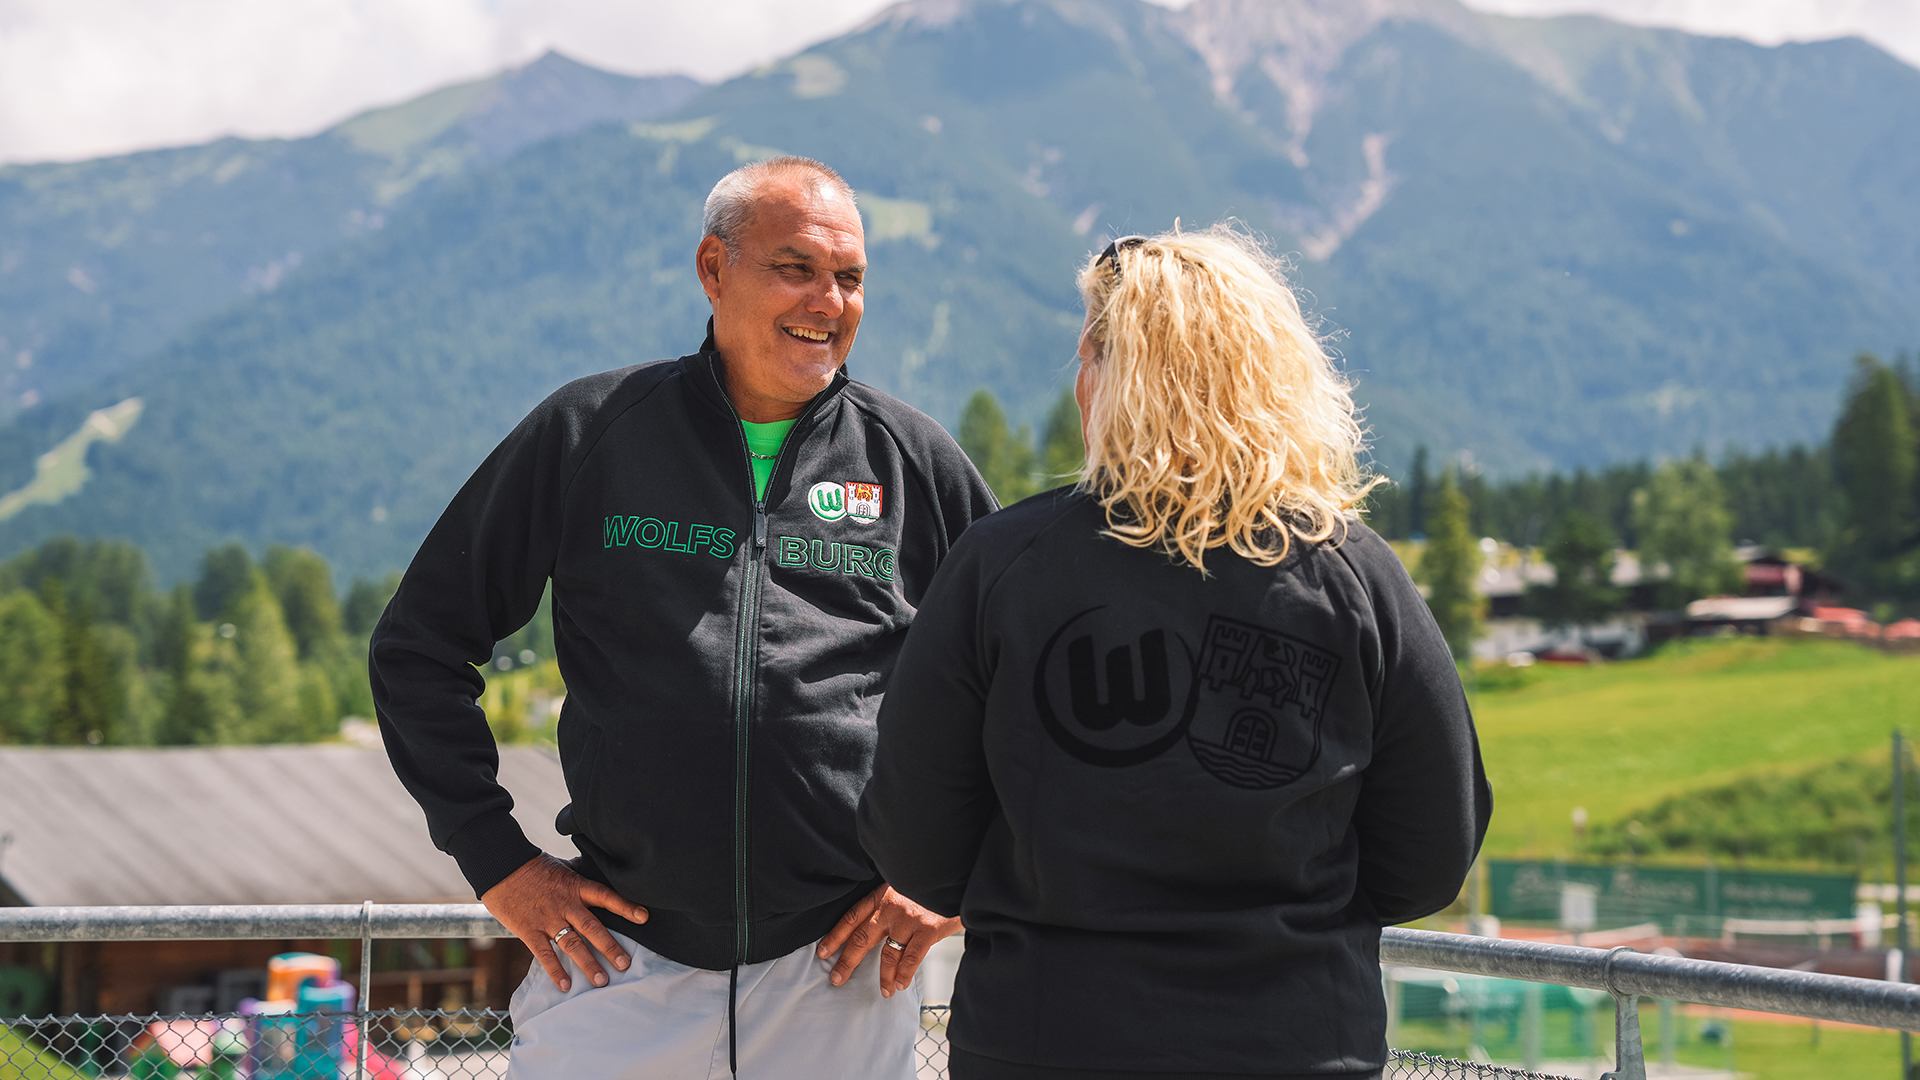 Balli unterhält sich mit einer Frau und trägt die Kultjacke des vfL Wolfsburg.